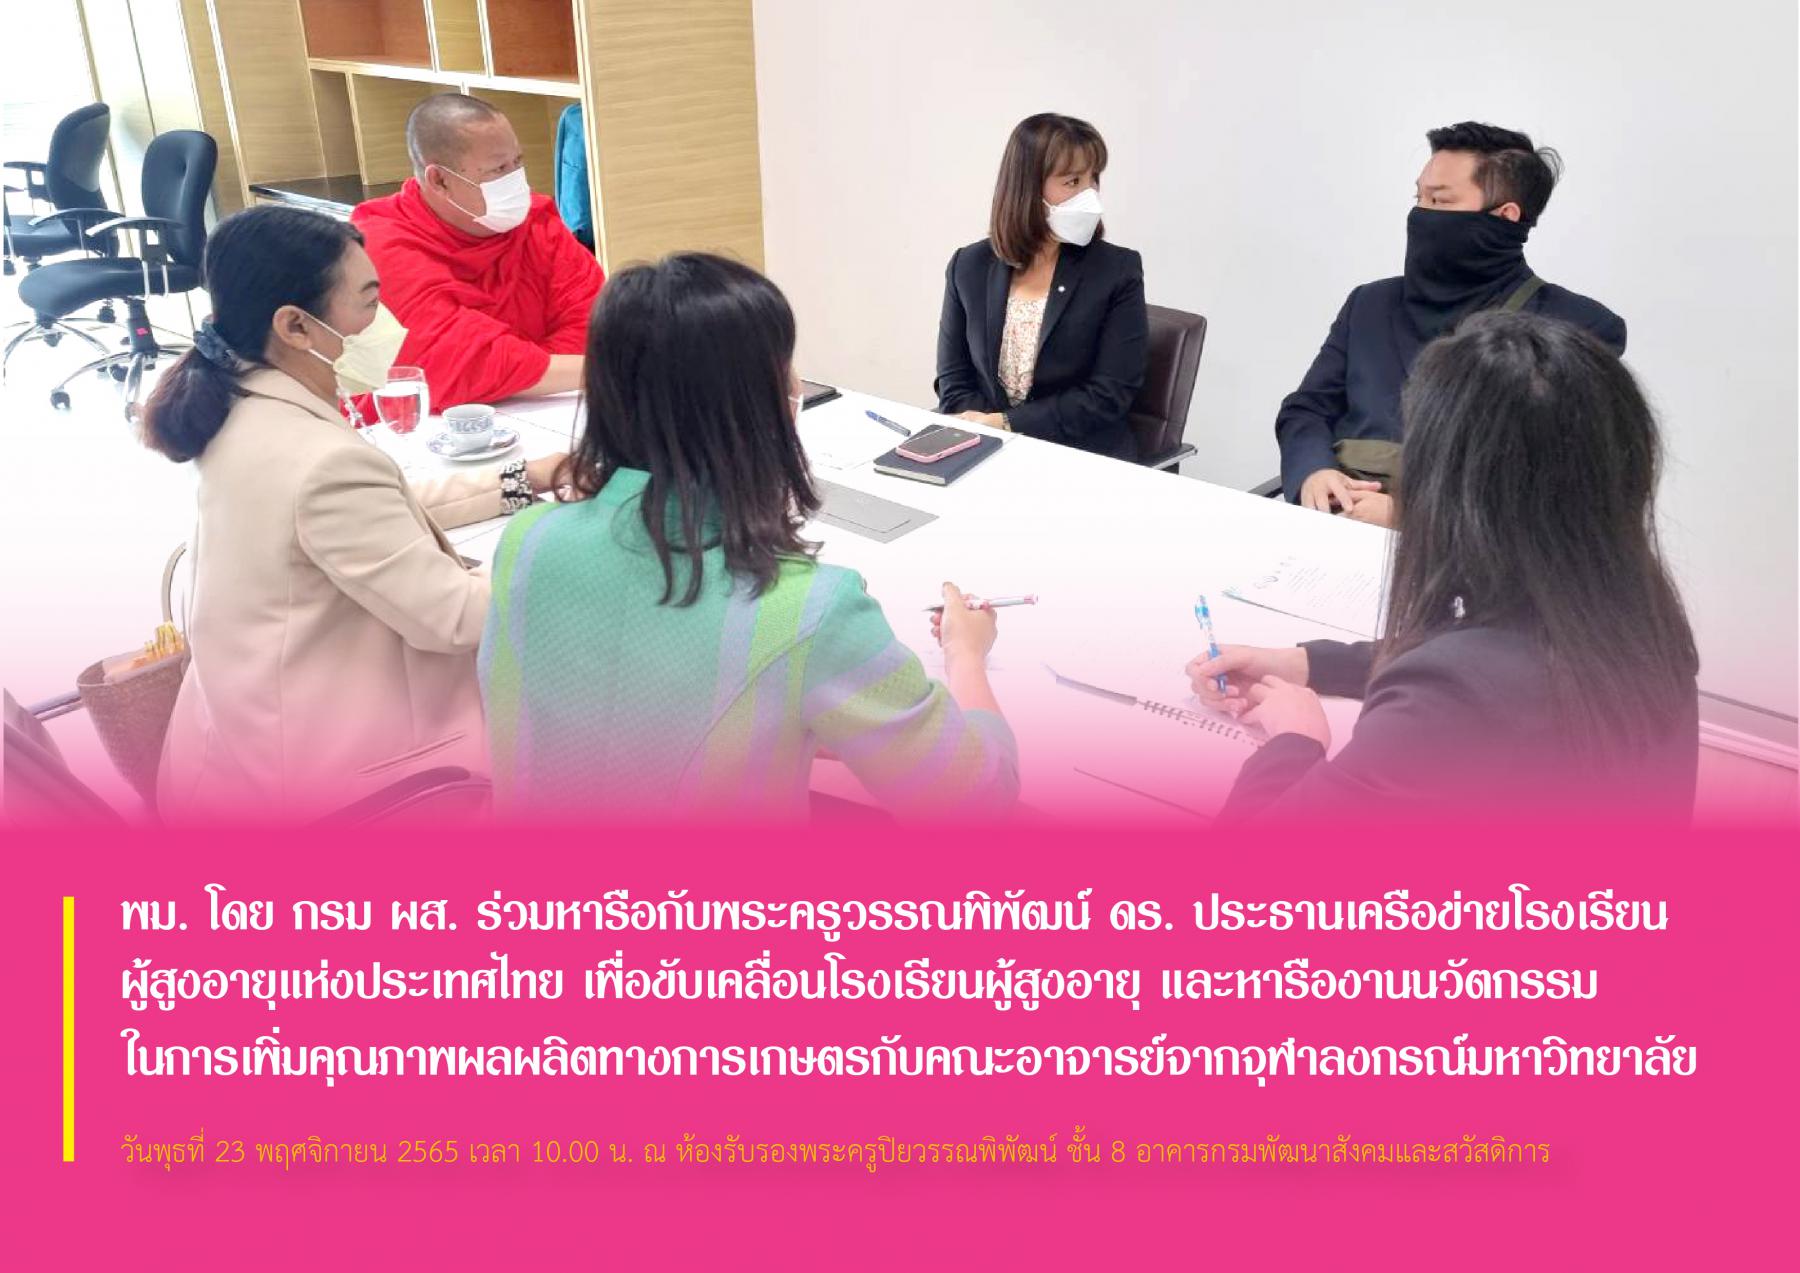 พม. โดย กรม ผส. ร่วมหารือกับพระครูวรรณพิพัฒน์ ดร. ประธานเครือข่ายโรงเรียนผู้สูงอายุแห่งประเทศไทย เพื่อขับเคลื่อนโรงเรียนผู้สูงอายุ และหารืองานนวัตกรรมในการเพิ่มคุณภาพผลผลิตทางการเกษตรกับคณะอาจารย์จากจ